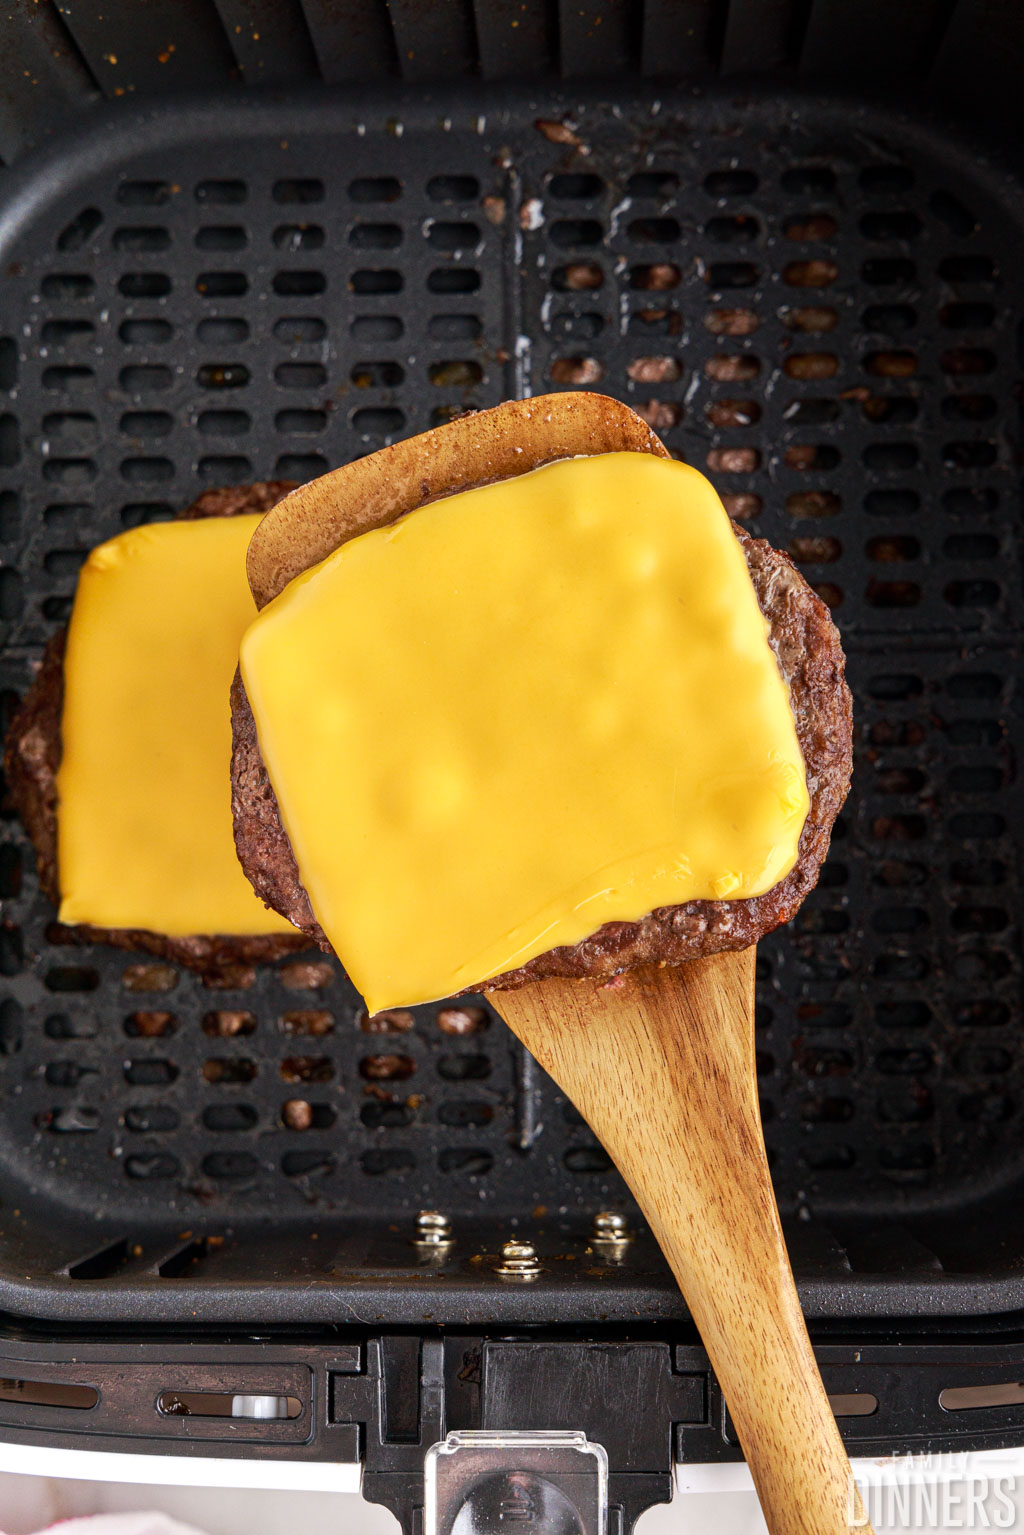 cheeseburger patty on a spatula.